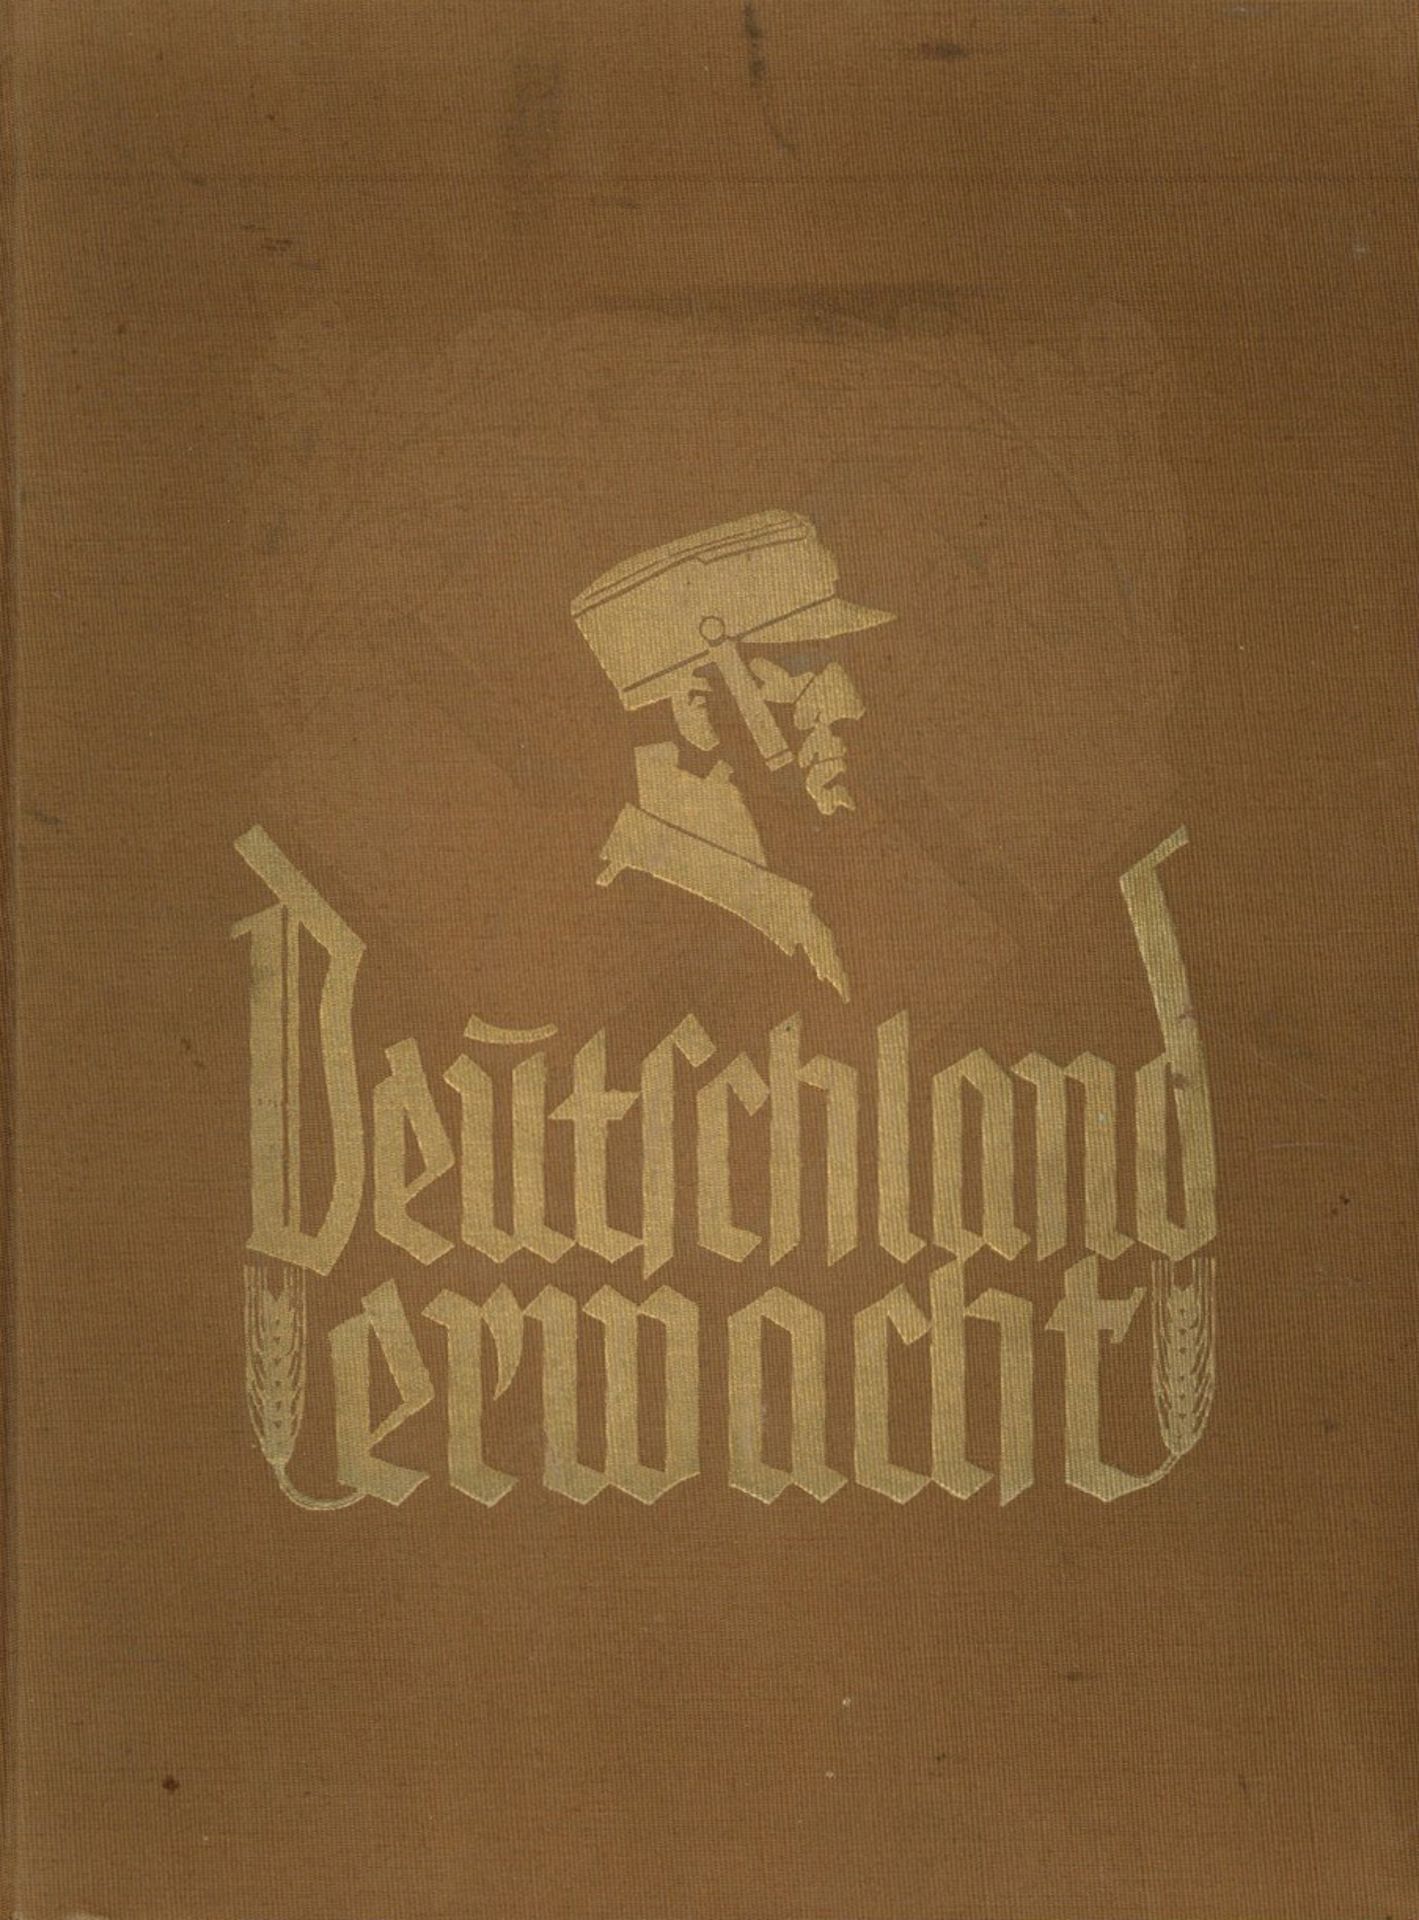 Sammelbild-Album Deutschland erwacht hrsg. vom Cigaretten-Bilderdienst Hamburg 1933 komplett 133